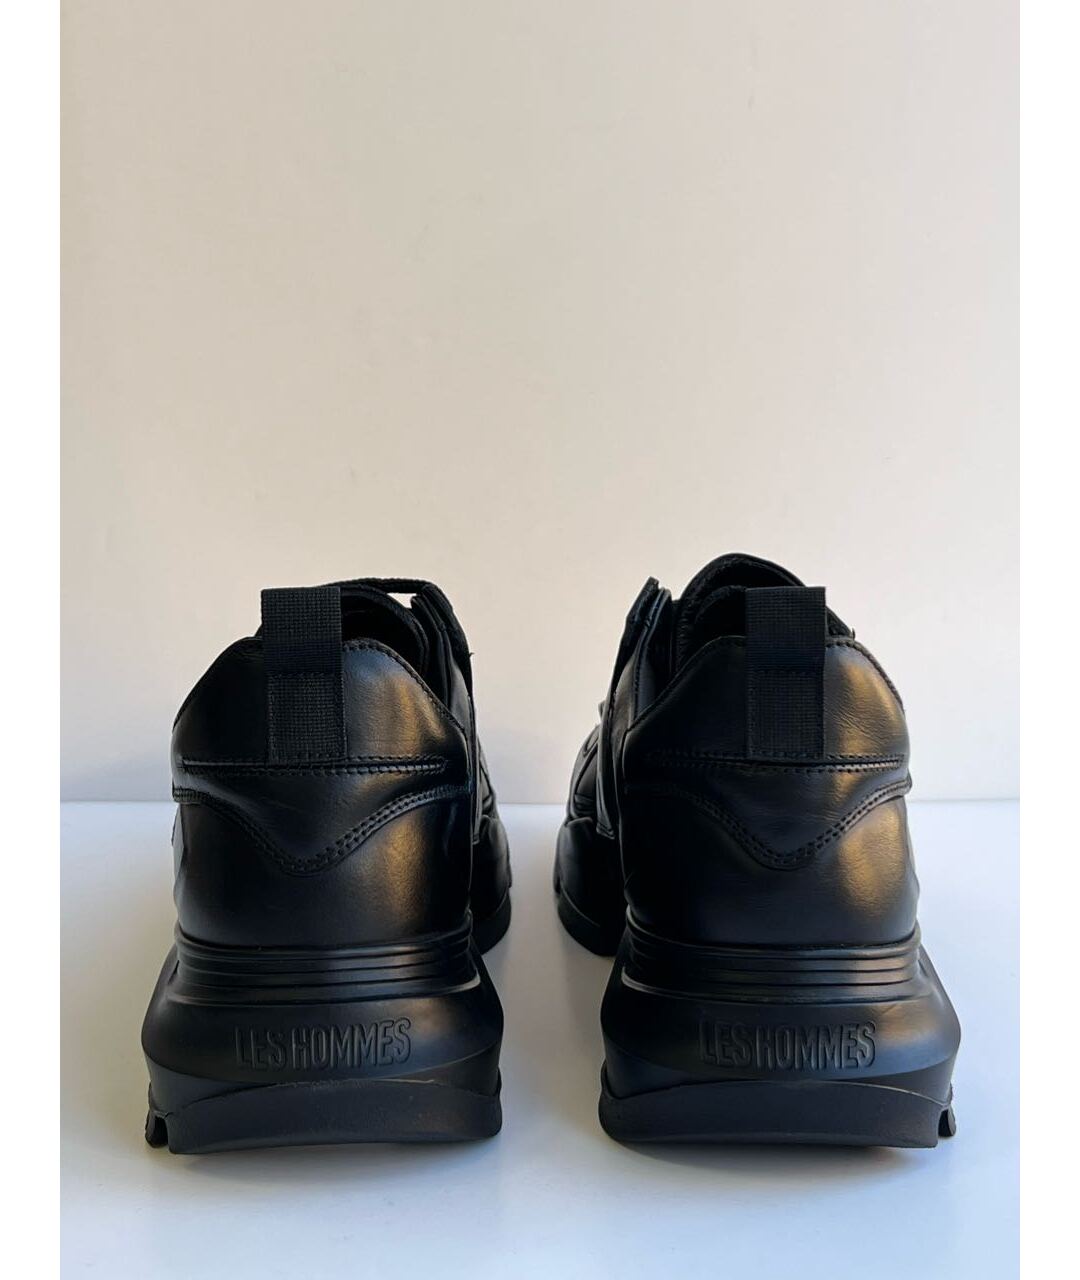 Les Hommes Черные кожаные низкие кроссовки / кеды, фото 4